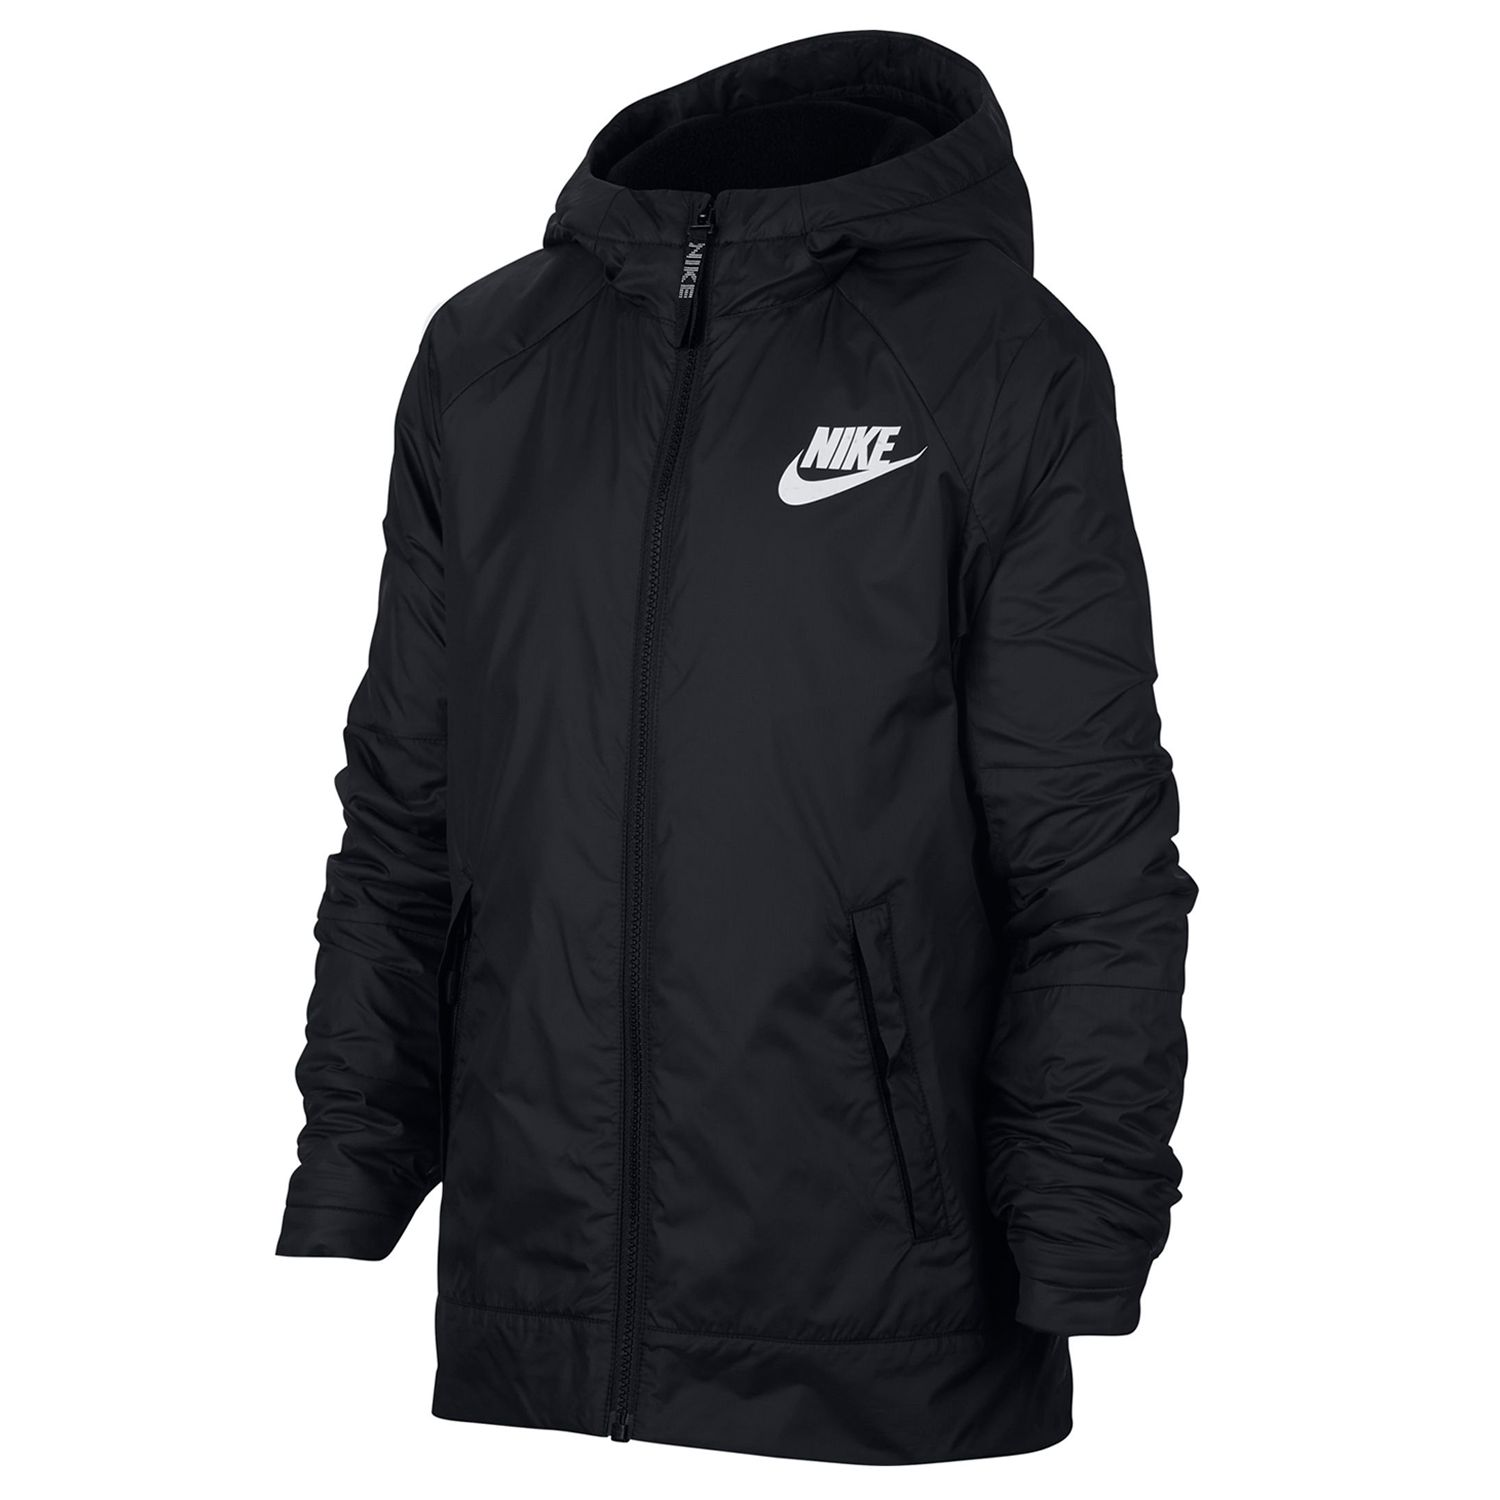 Boys 8-20 Nike Fleece-Lined Jacket